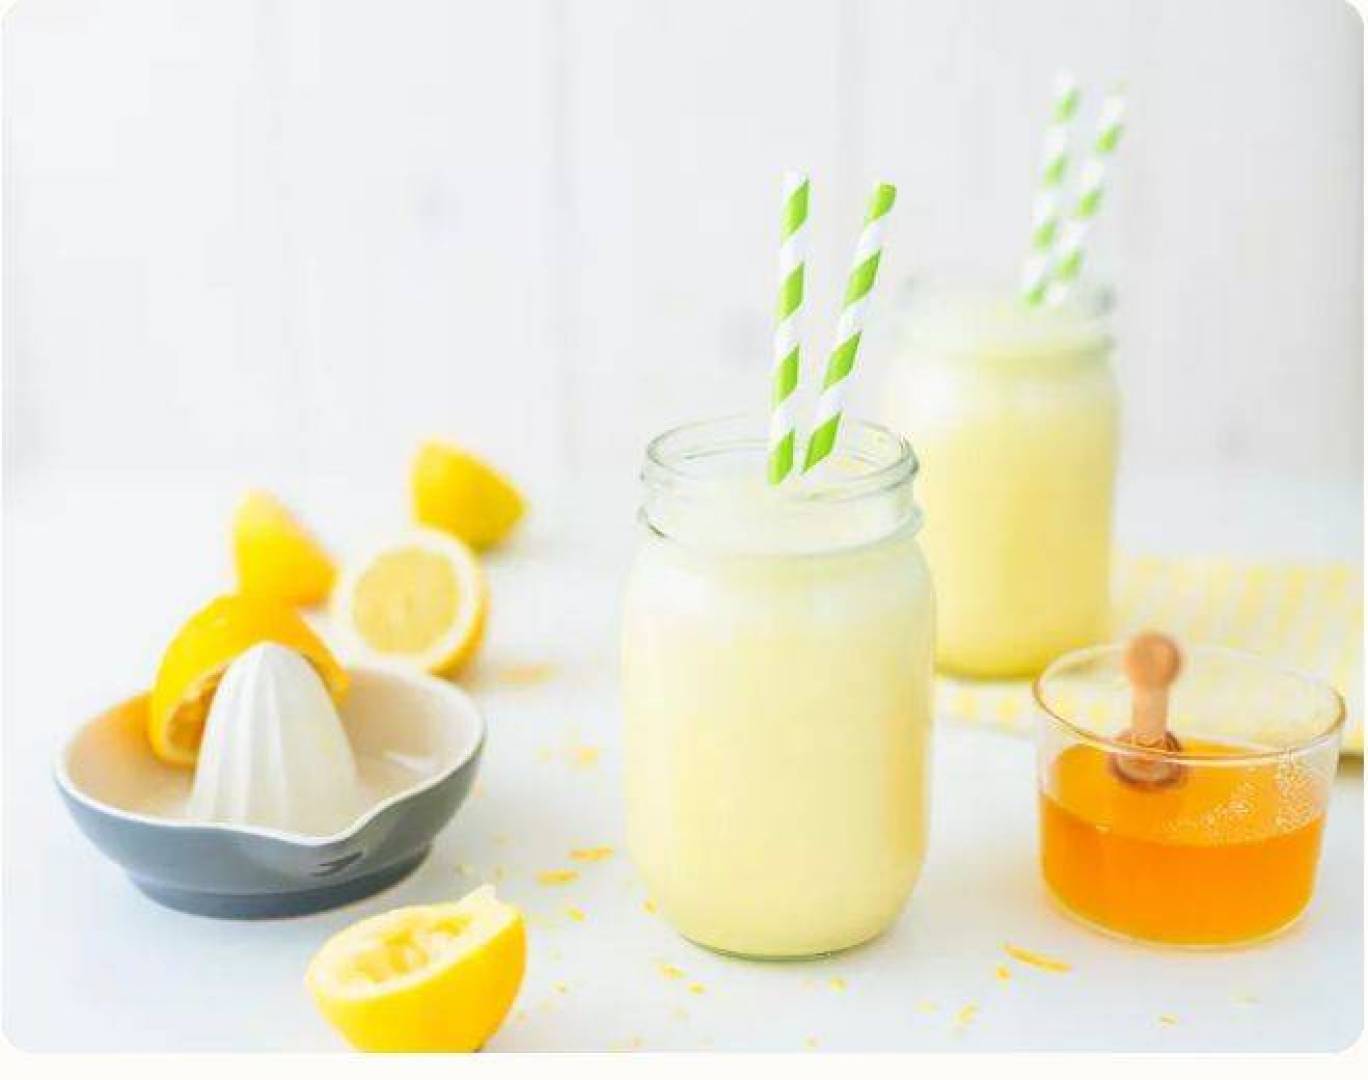 عصير الليمون بالبروتين شراب شائع على تيك توك.. هل هو صحي؟